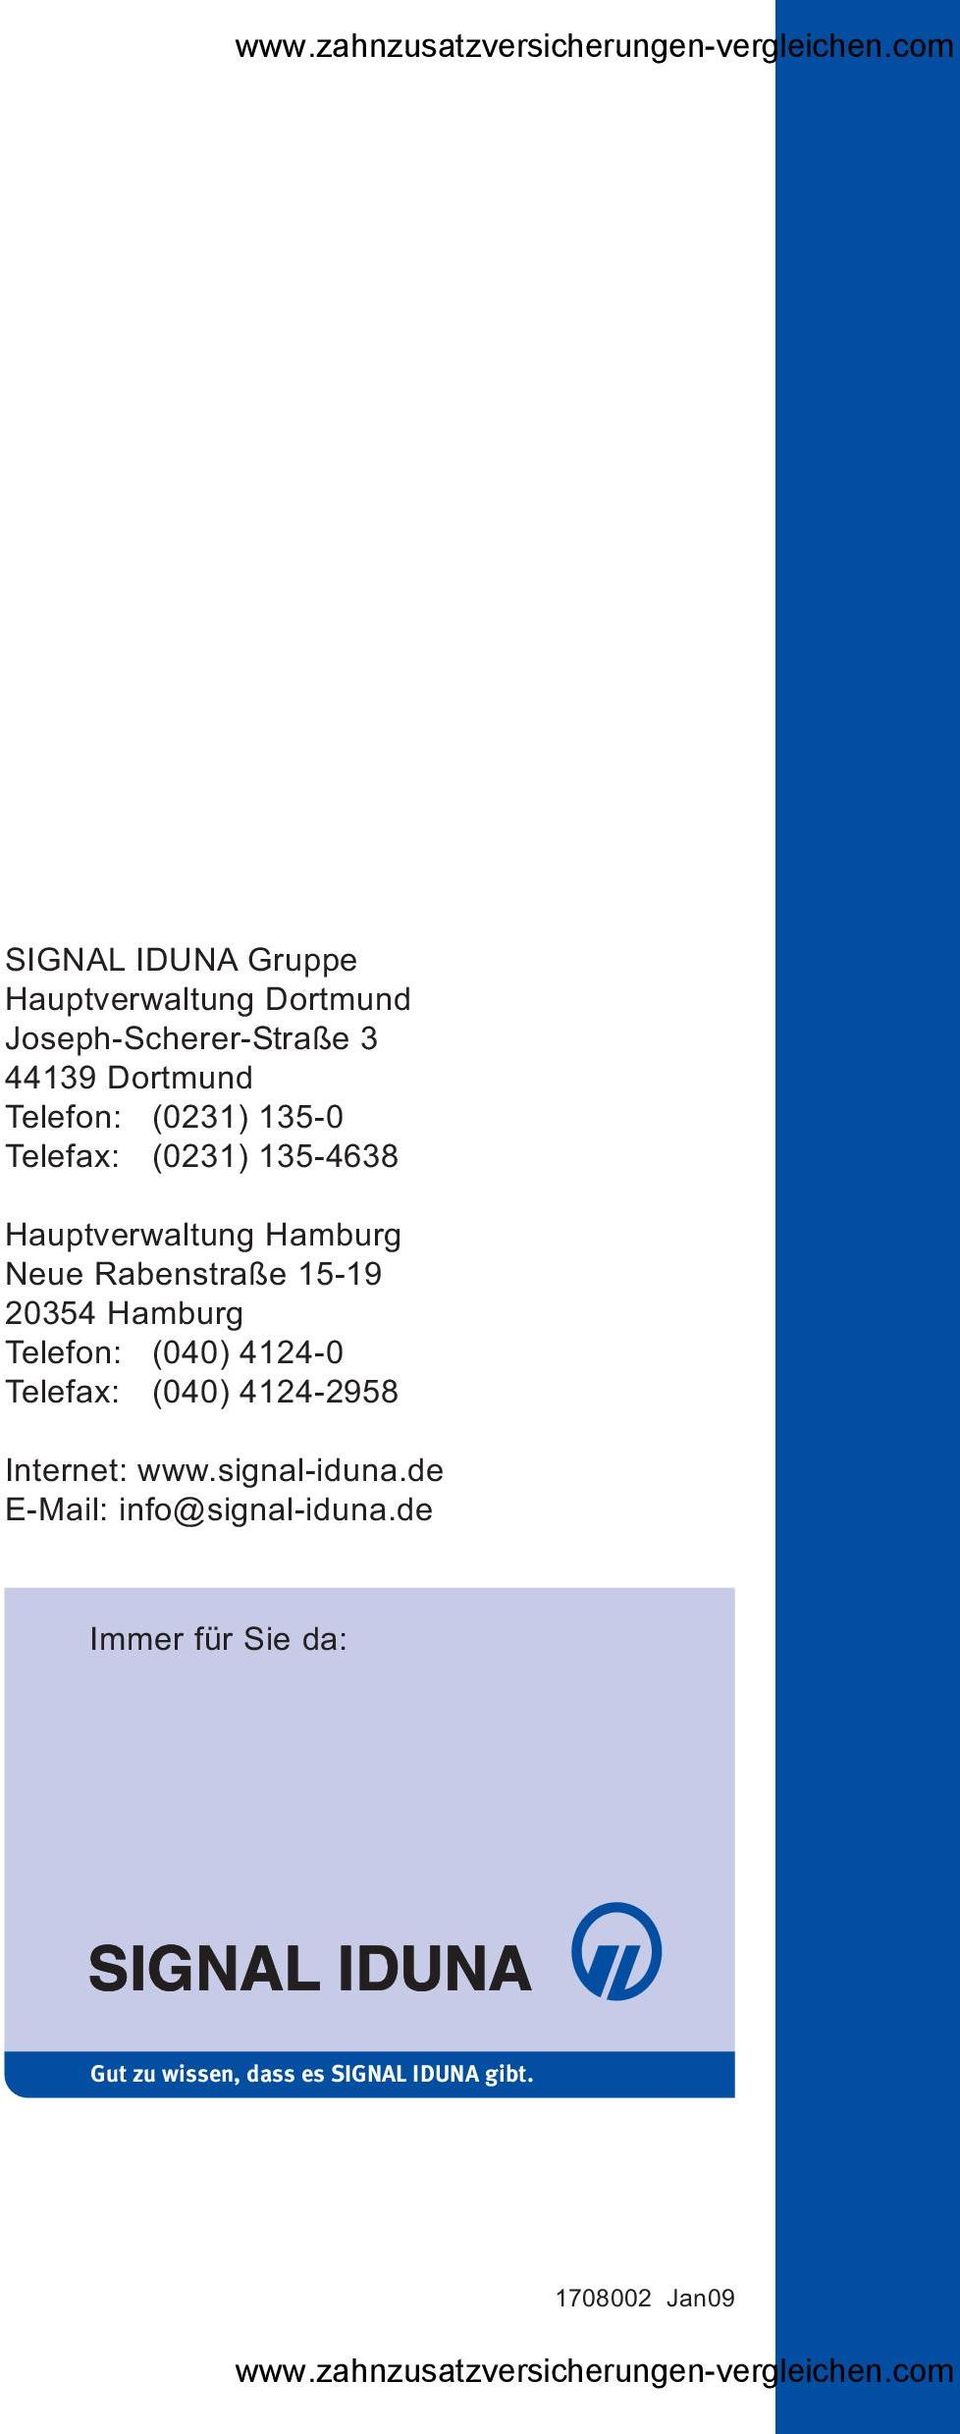 Hamburg Telefon: (040) 4124-0 Telefax: (040) 4124-2958 Internet: www.signal-iduna.